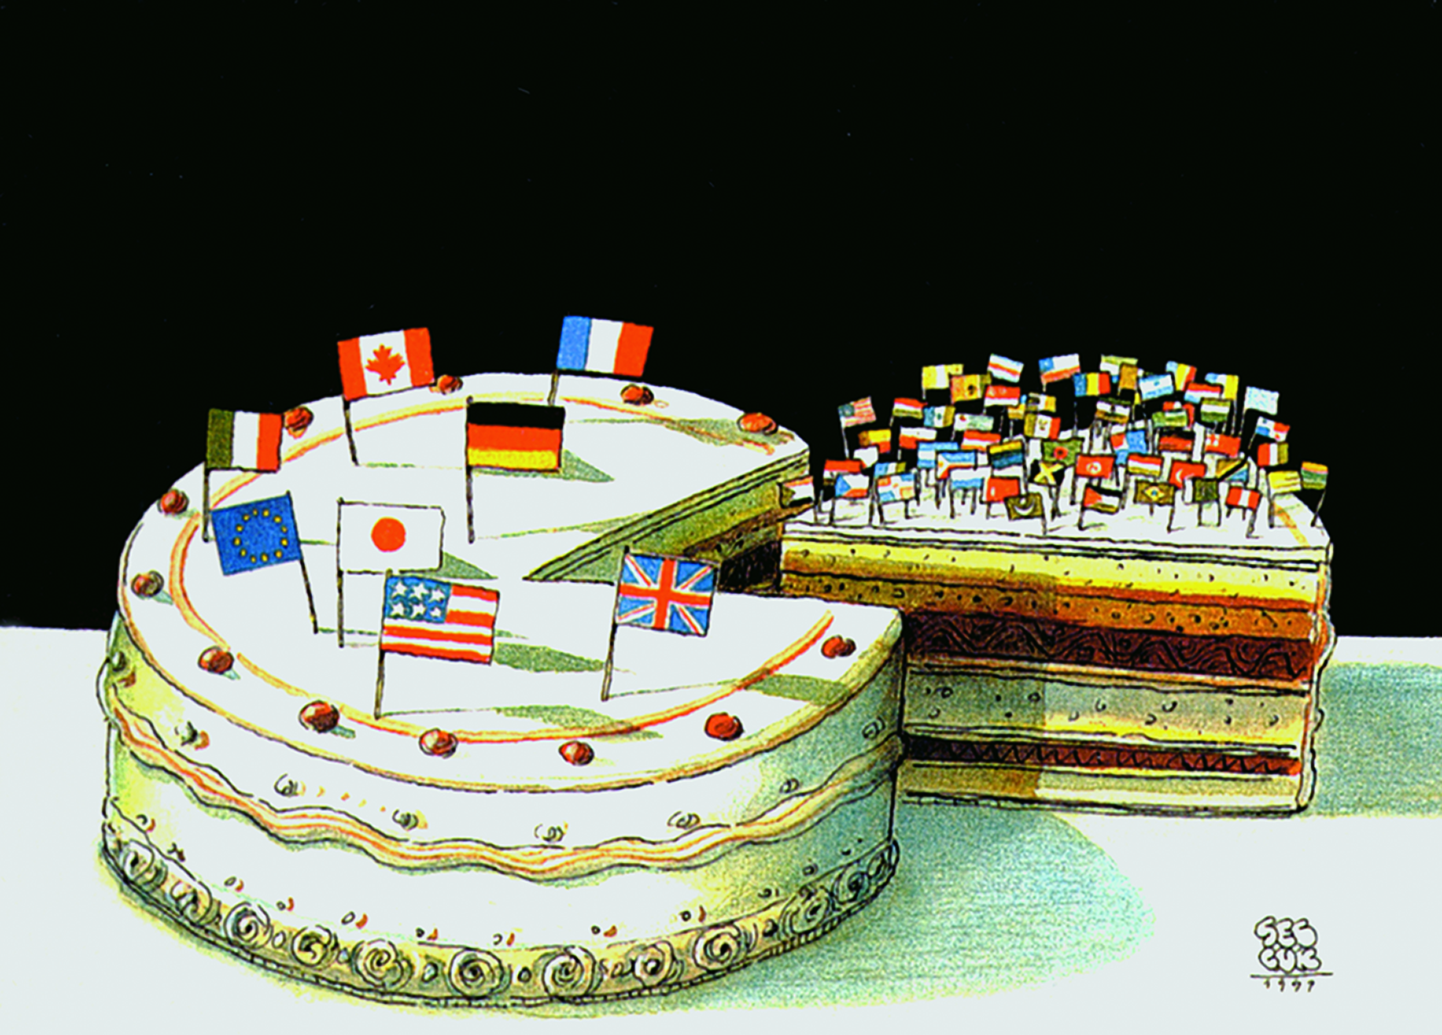 Charge. Um bolo confeitado com as bandeiras do Canadá, França, Reino Unido, União Europeia, Estados Unidos, Japão, Itália e Alemanha. Há uma fatia do bolo cortada ao lado, com as bandeiras dos demais países amontoadas sobre ela.